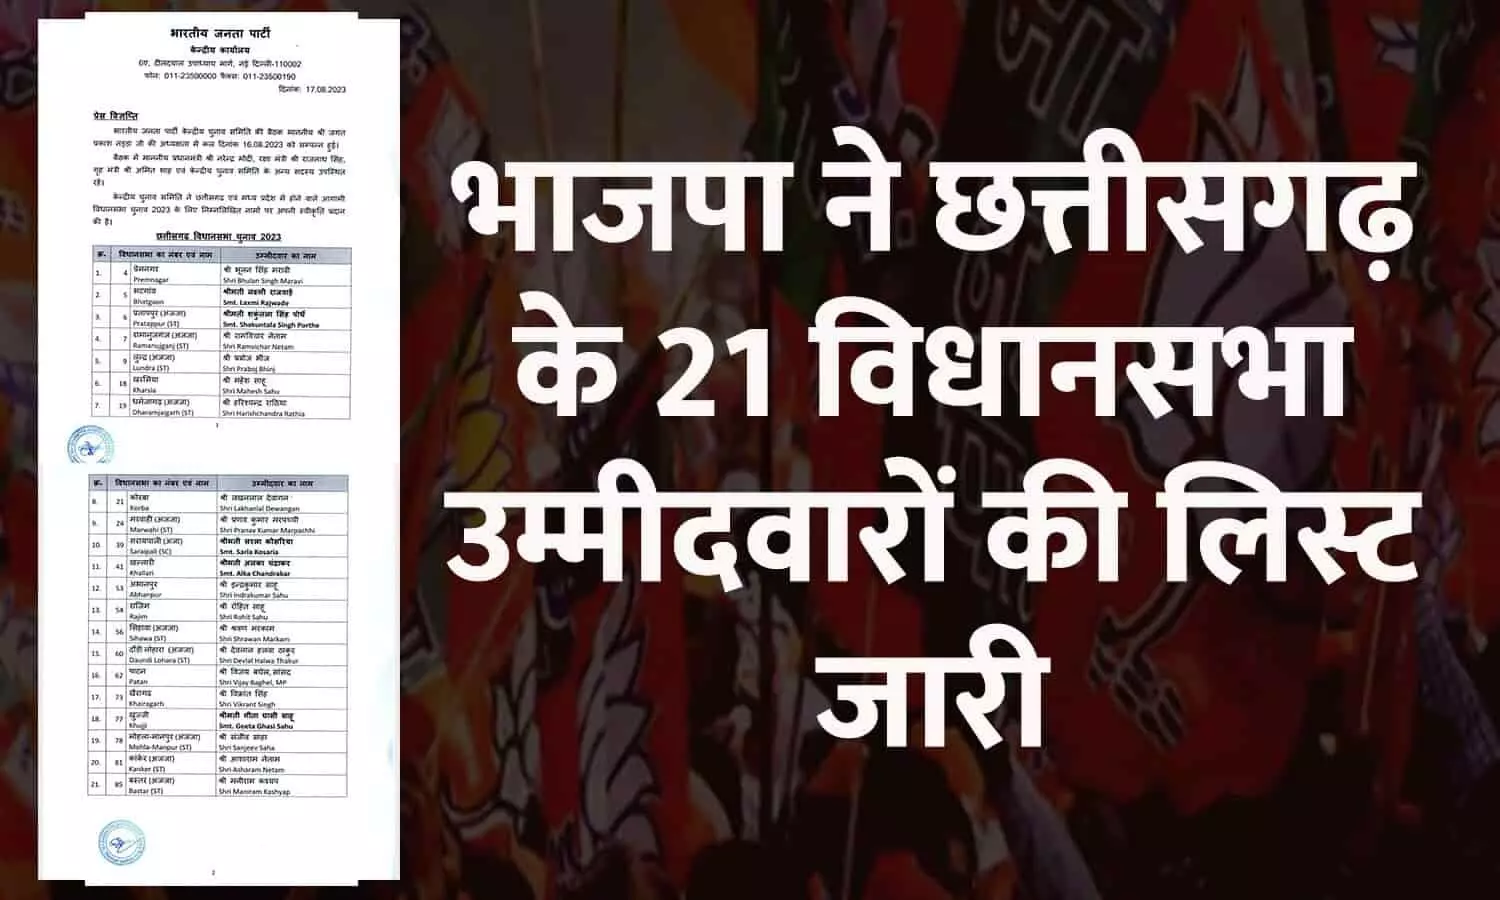 CG Elections 2023: भाजपा ने छत्तीसगढ़ के 21 विधानसभा उम्मीदवारों की लिस्ट जारी की, जानिए किसे कहां से टिकट मिला